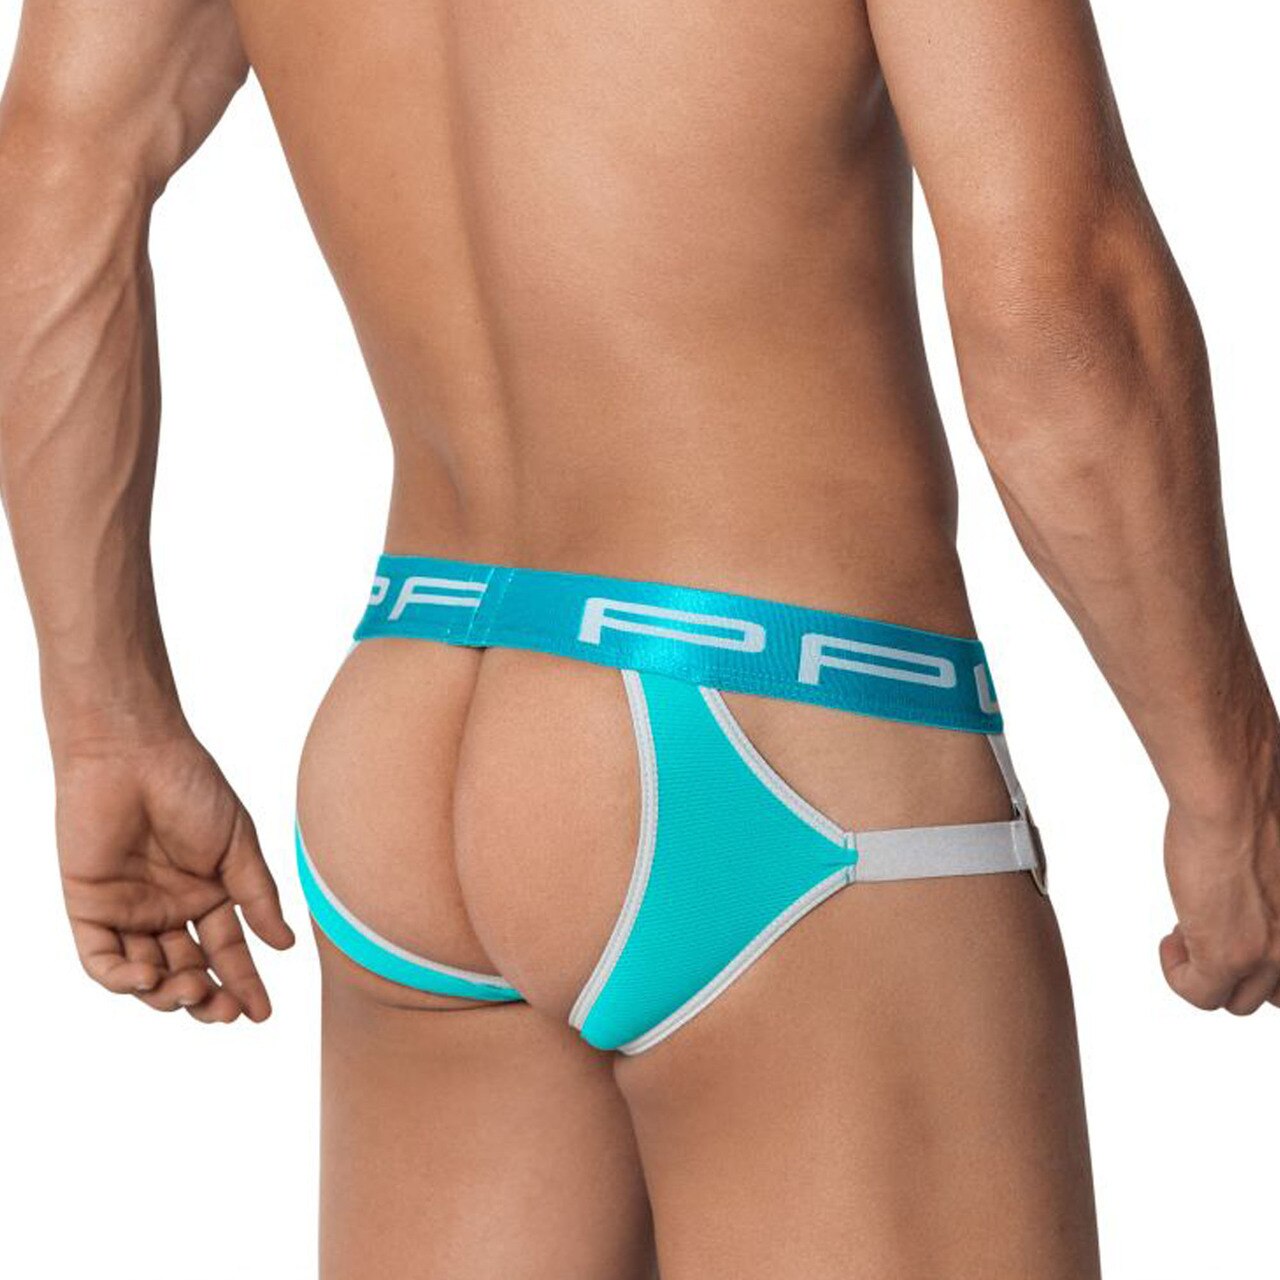 SALE - Mens PPU Underwear Strap Jock Strap with Metal Rings Jade